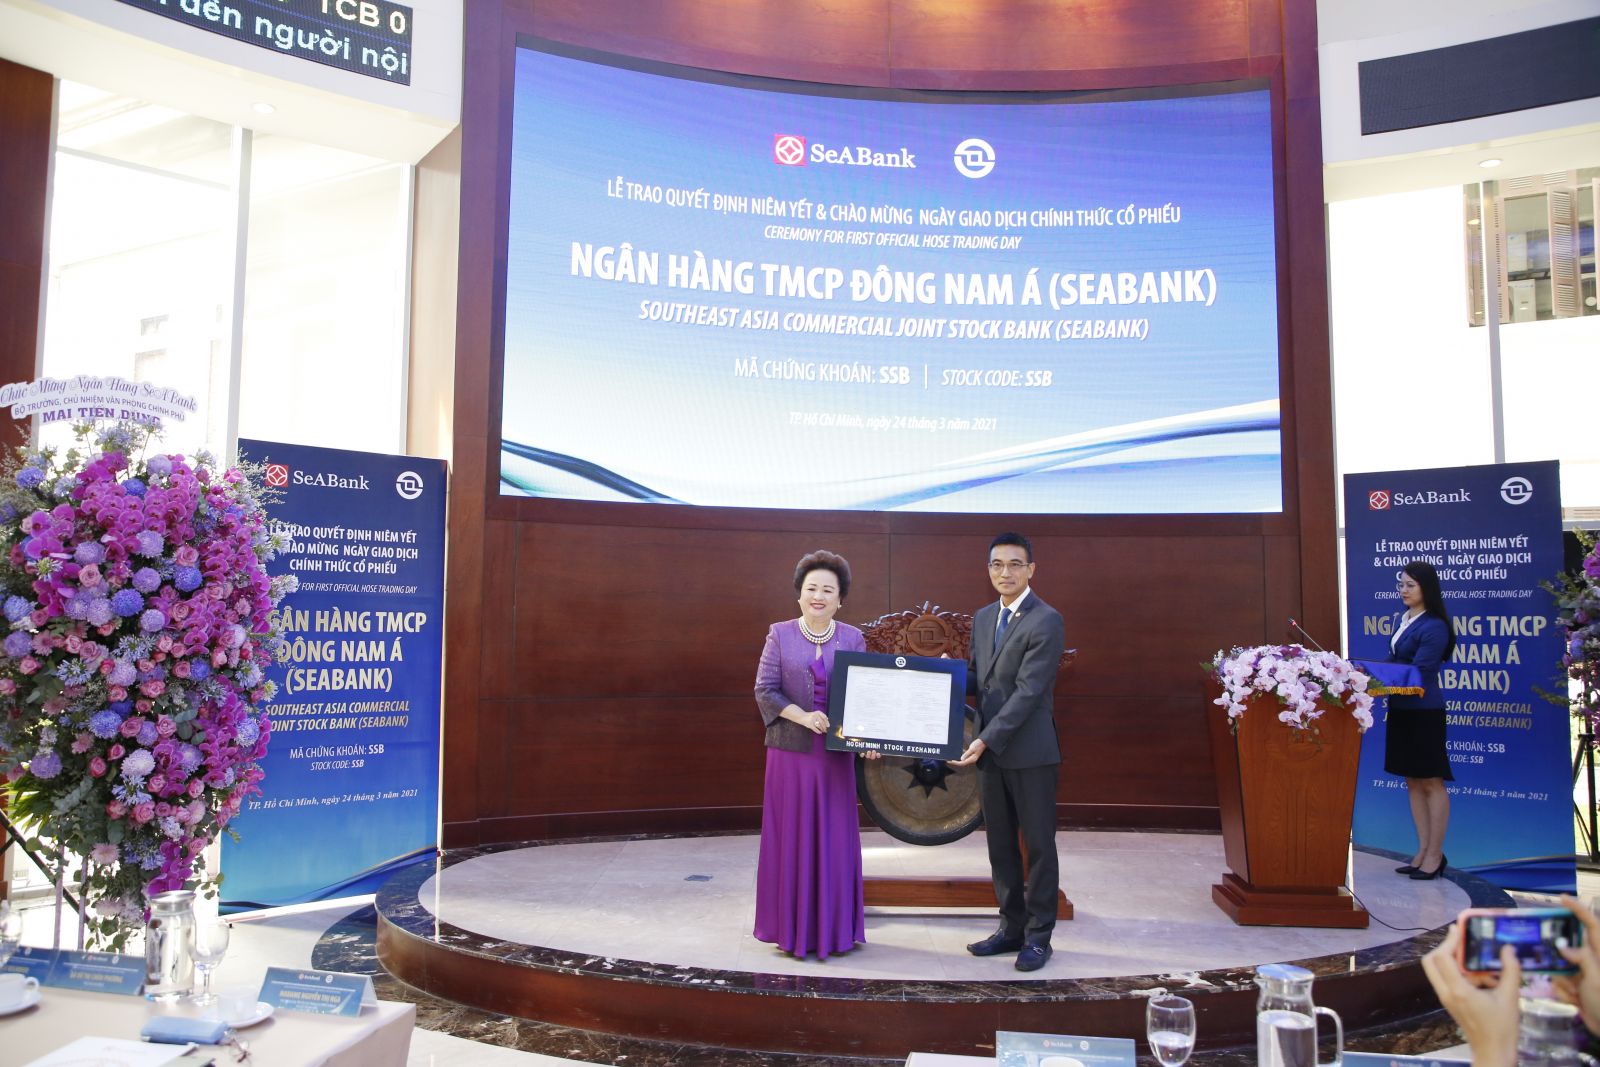 Sáng 24/3, hơn 1,2 tỷ cổ phiếu của Ngân hàng TMCP Đông Nam Á (SeABank) chính thức được niêm yết và giao dịch trên Sở Giao dịch Chứng khoán TP.HCM (HOSE)